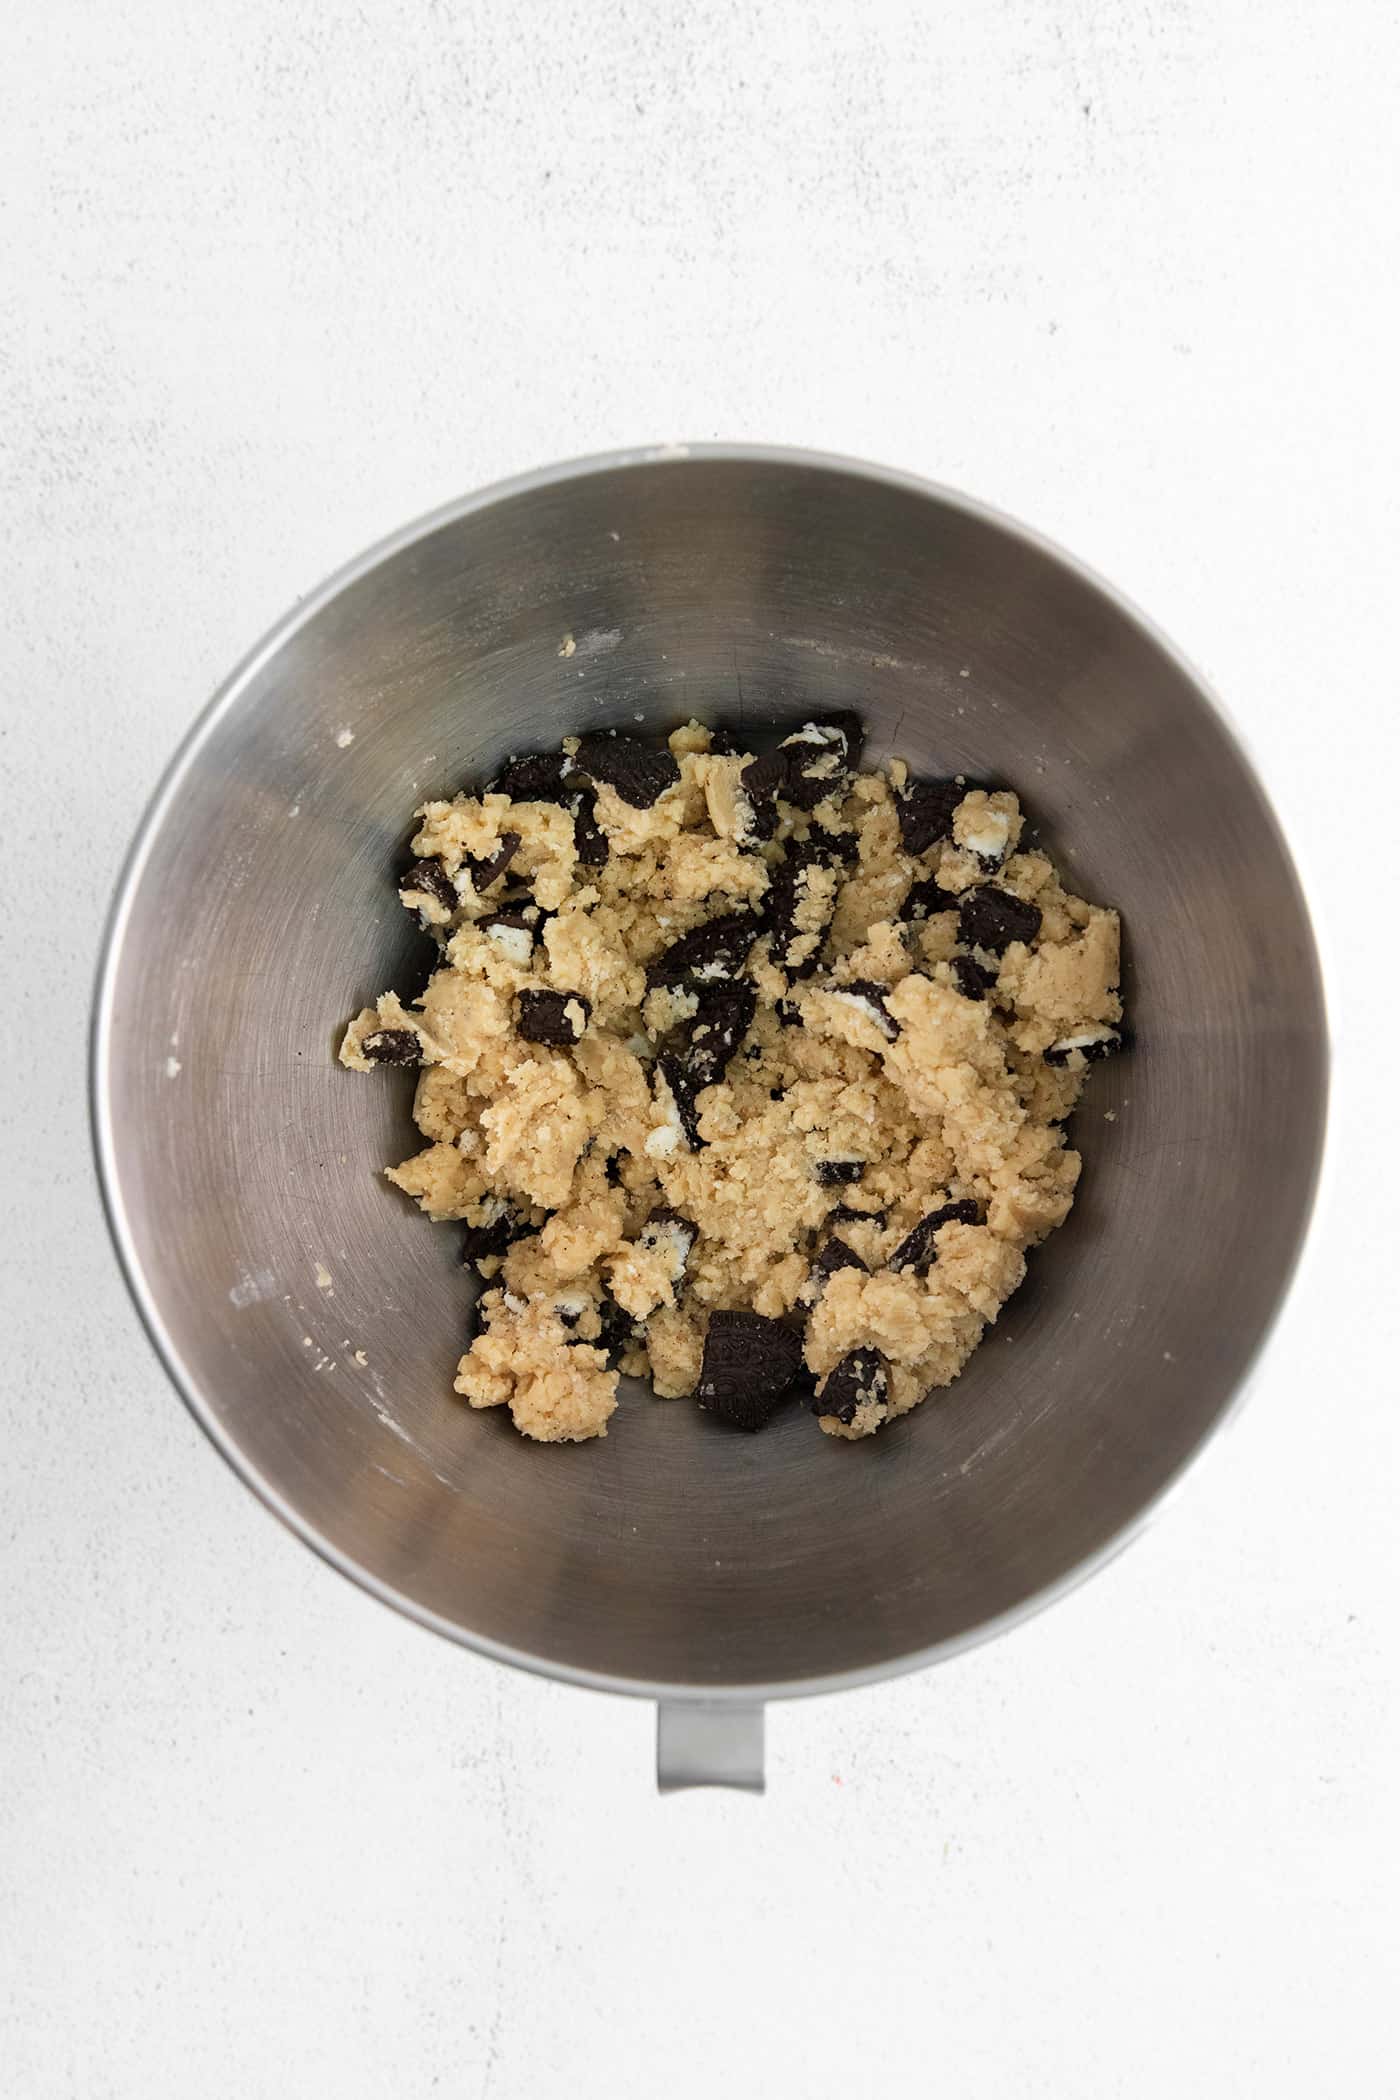 Oreo edible cookie dough in a mixing bowl